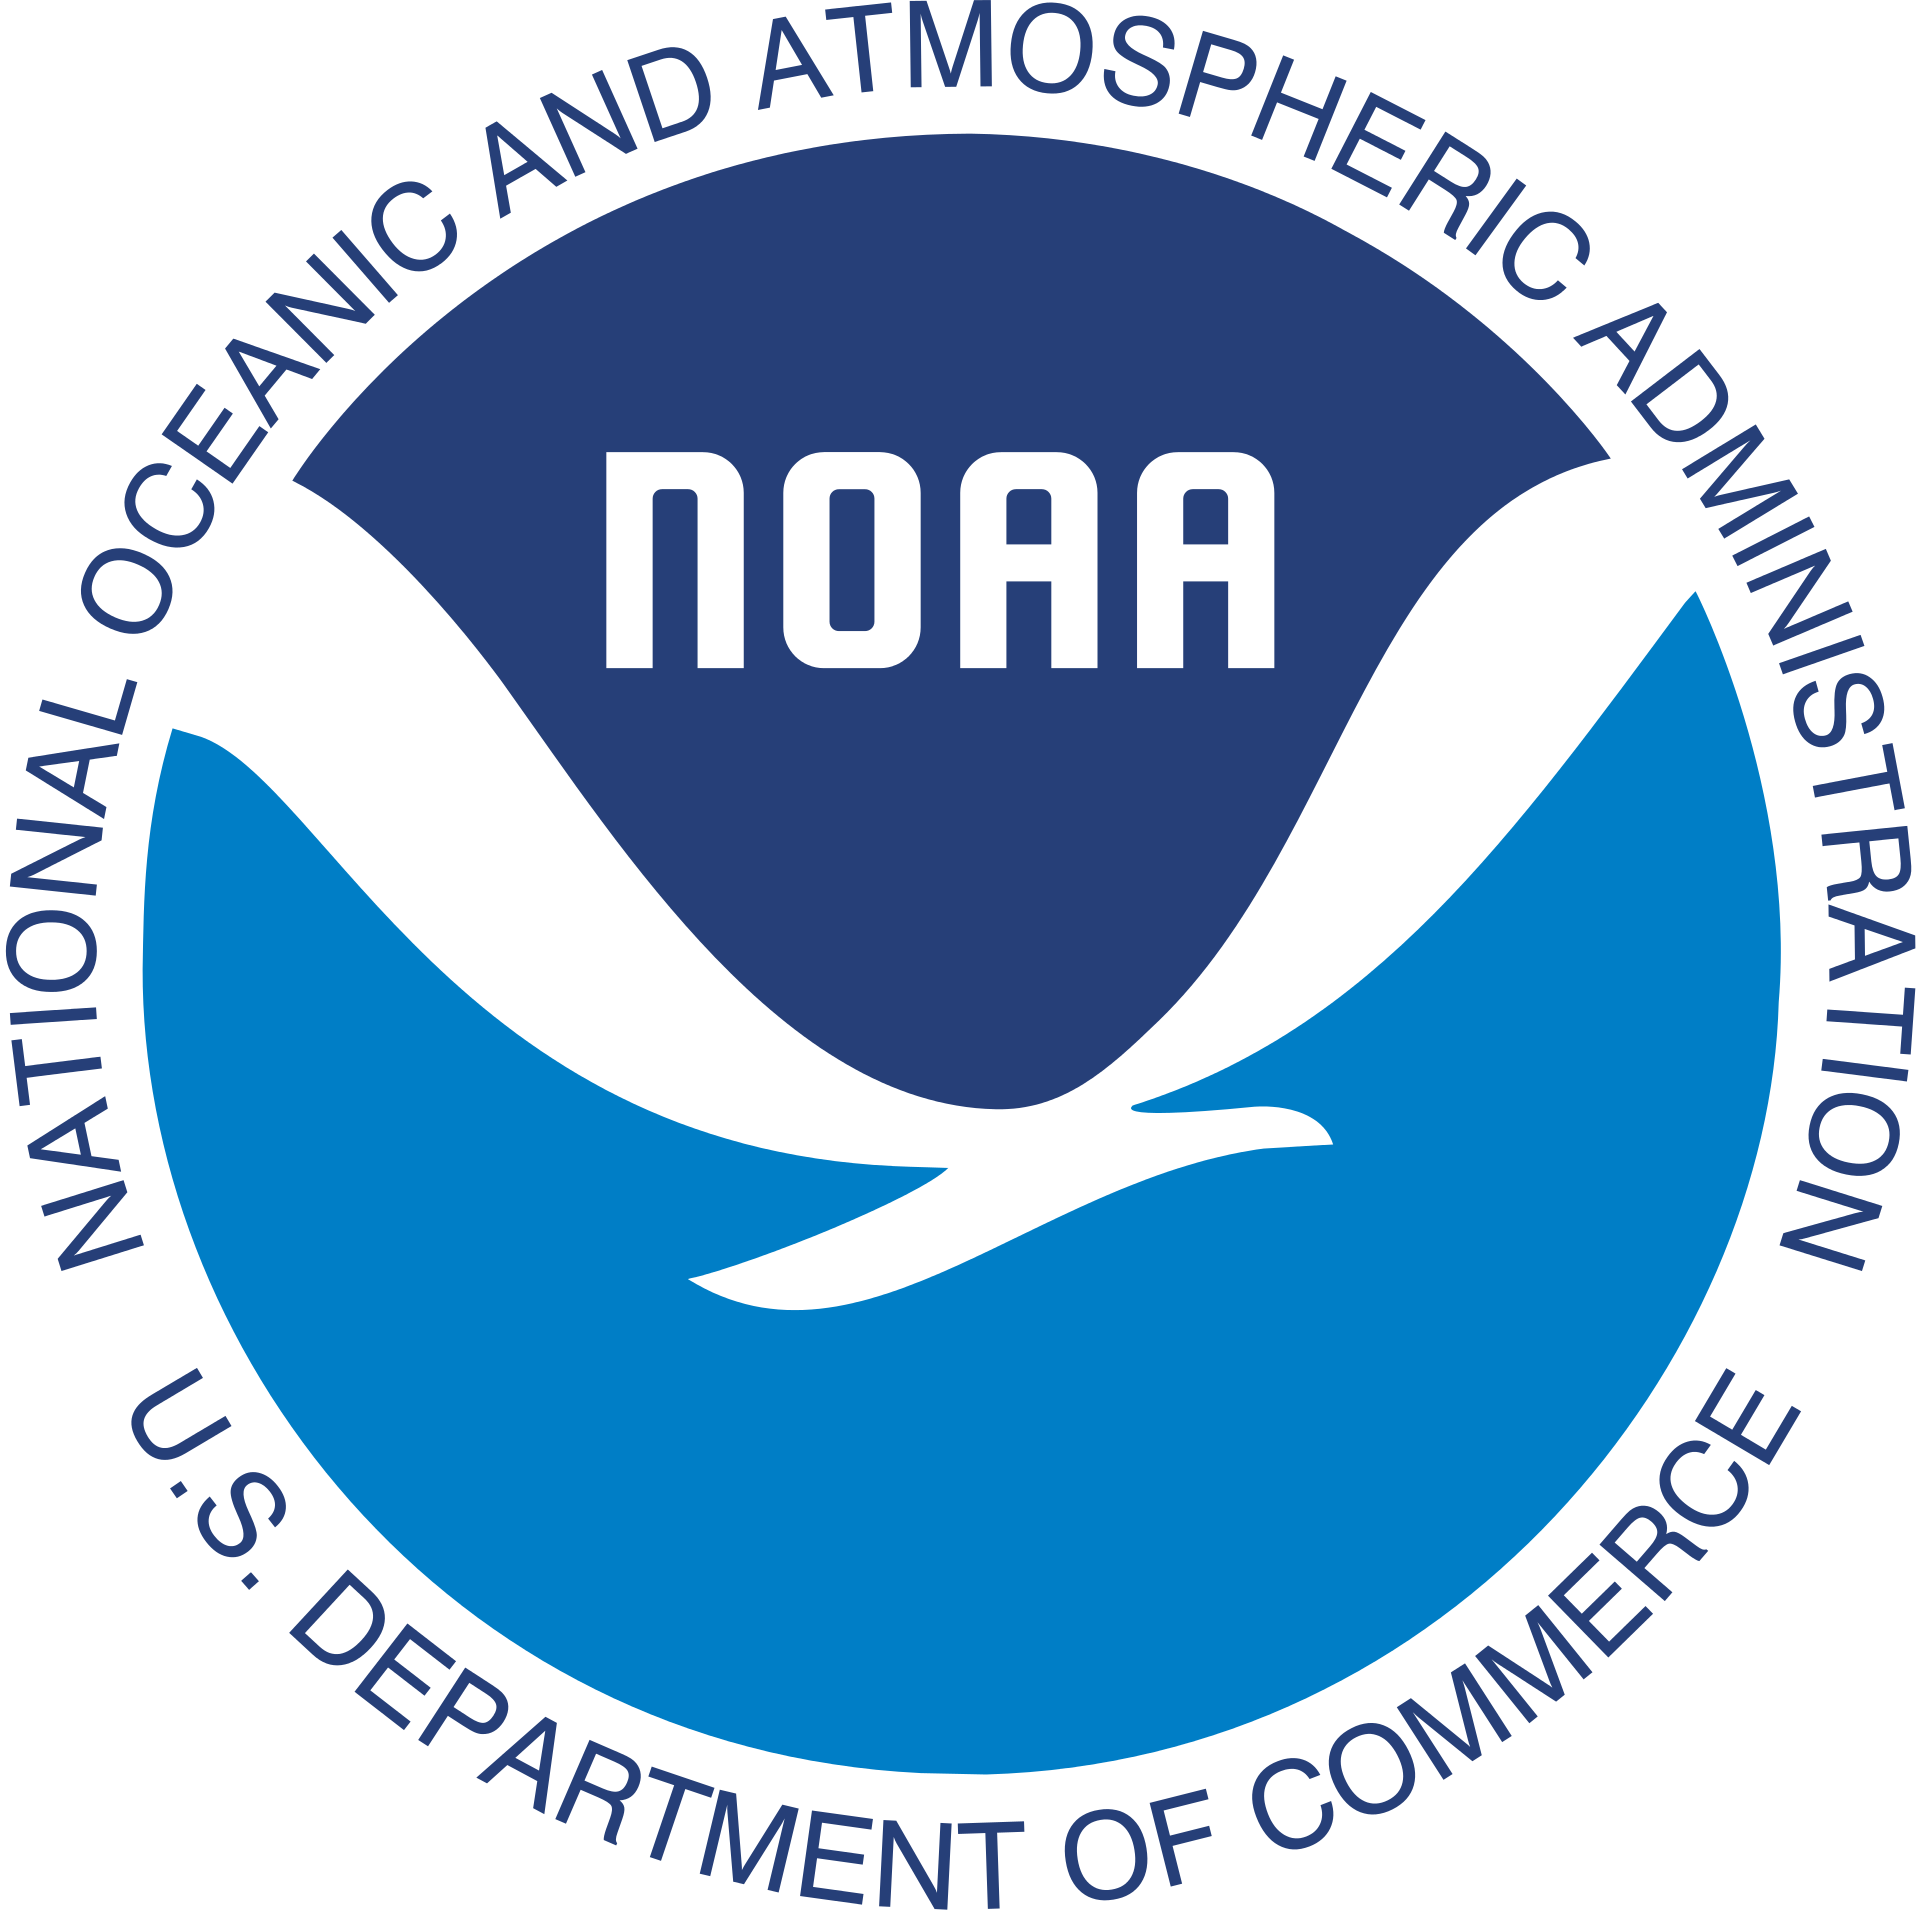 U.S. NOAA - National Oceanic and Atmospheric Administration - National Oceanographic and Atmospheric Administration - Национальное управление океанических и атмосферных исследований